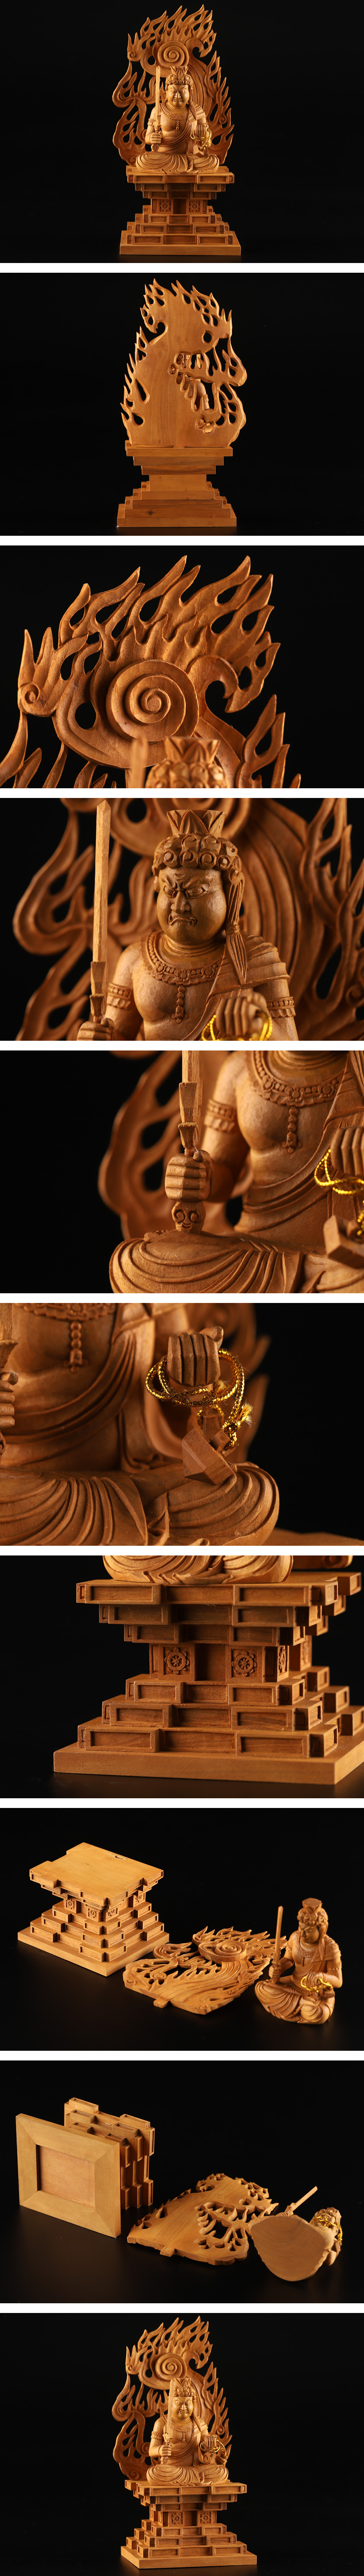 超特価通販仏教美術 白檀 木彫仏像 座像 重量226.6g KG899 その他